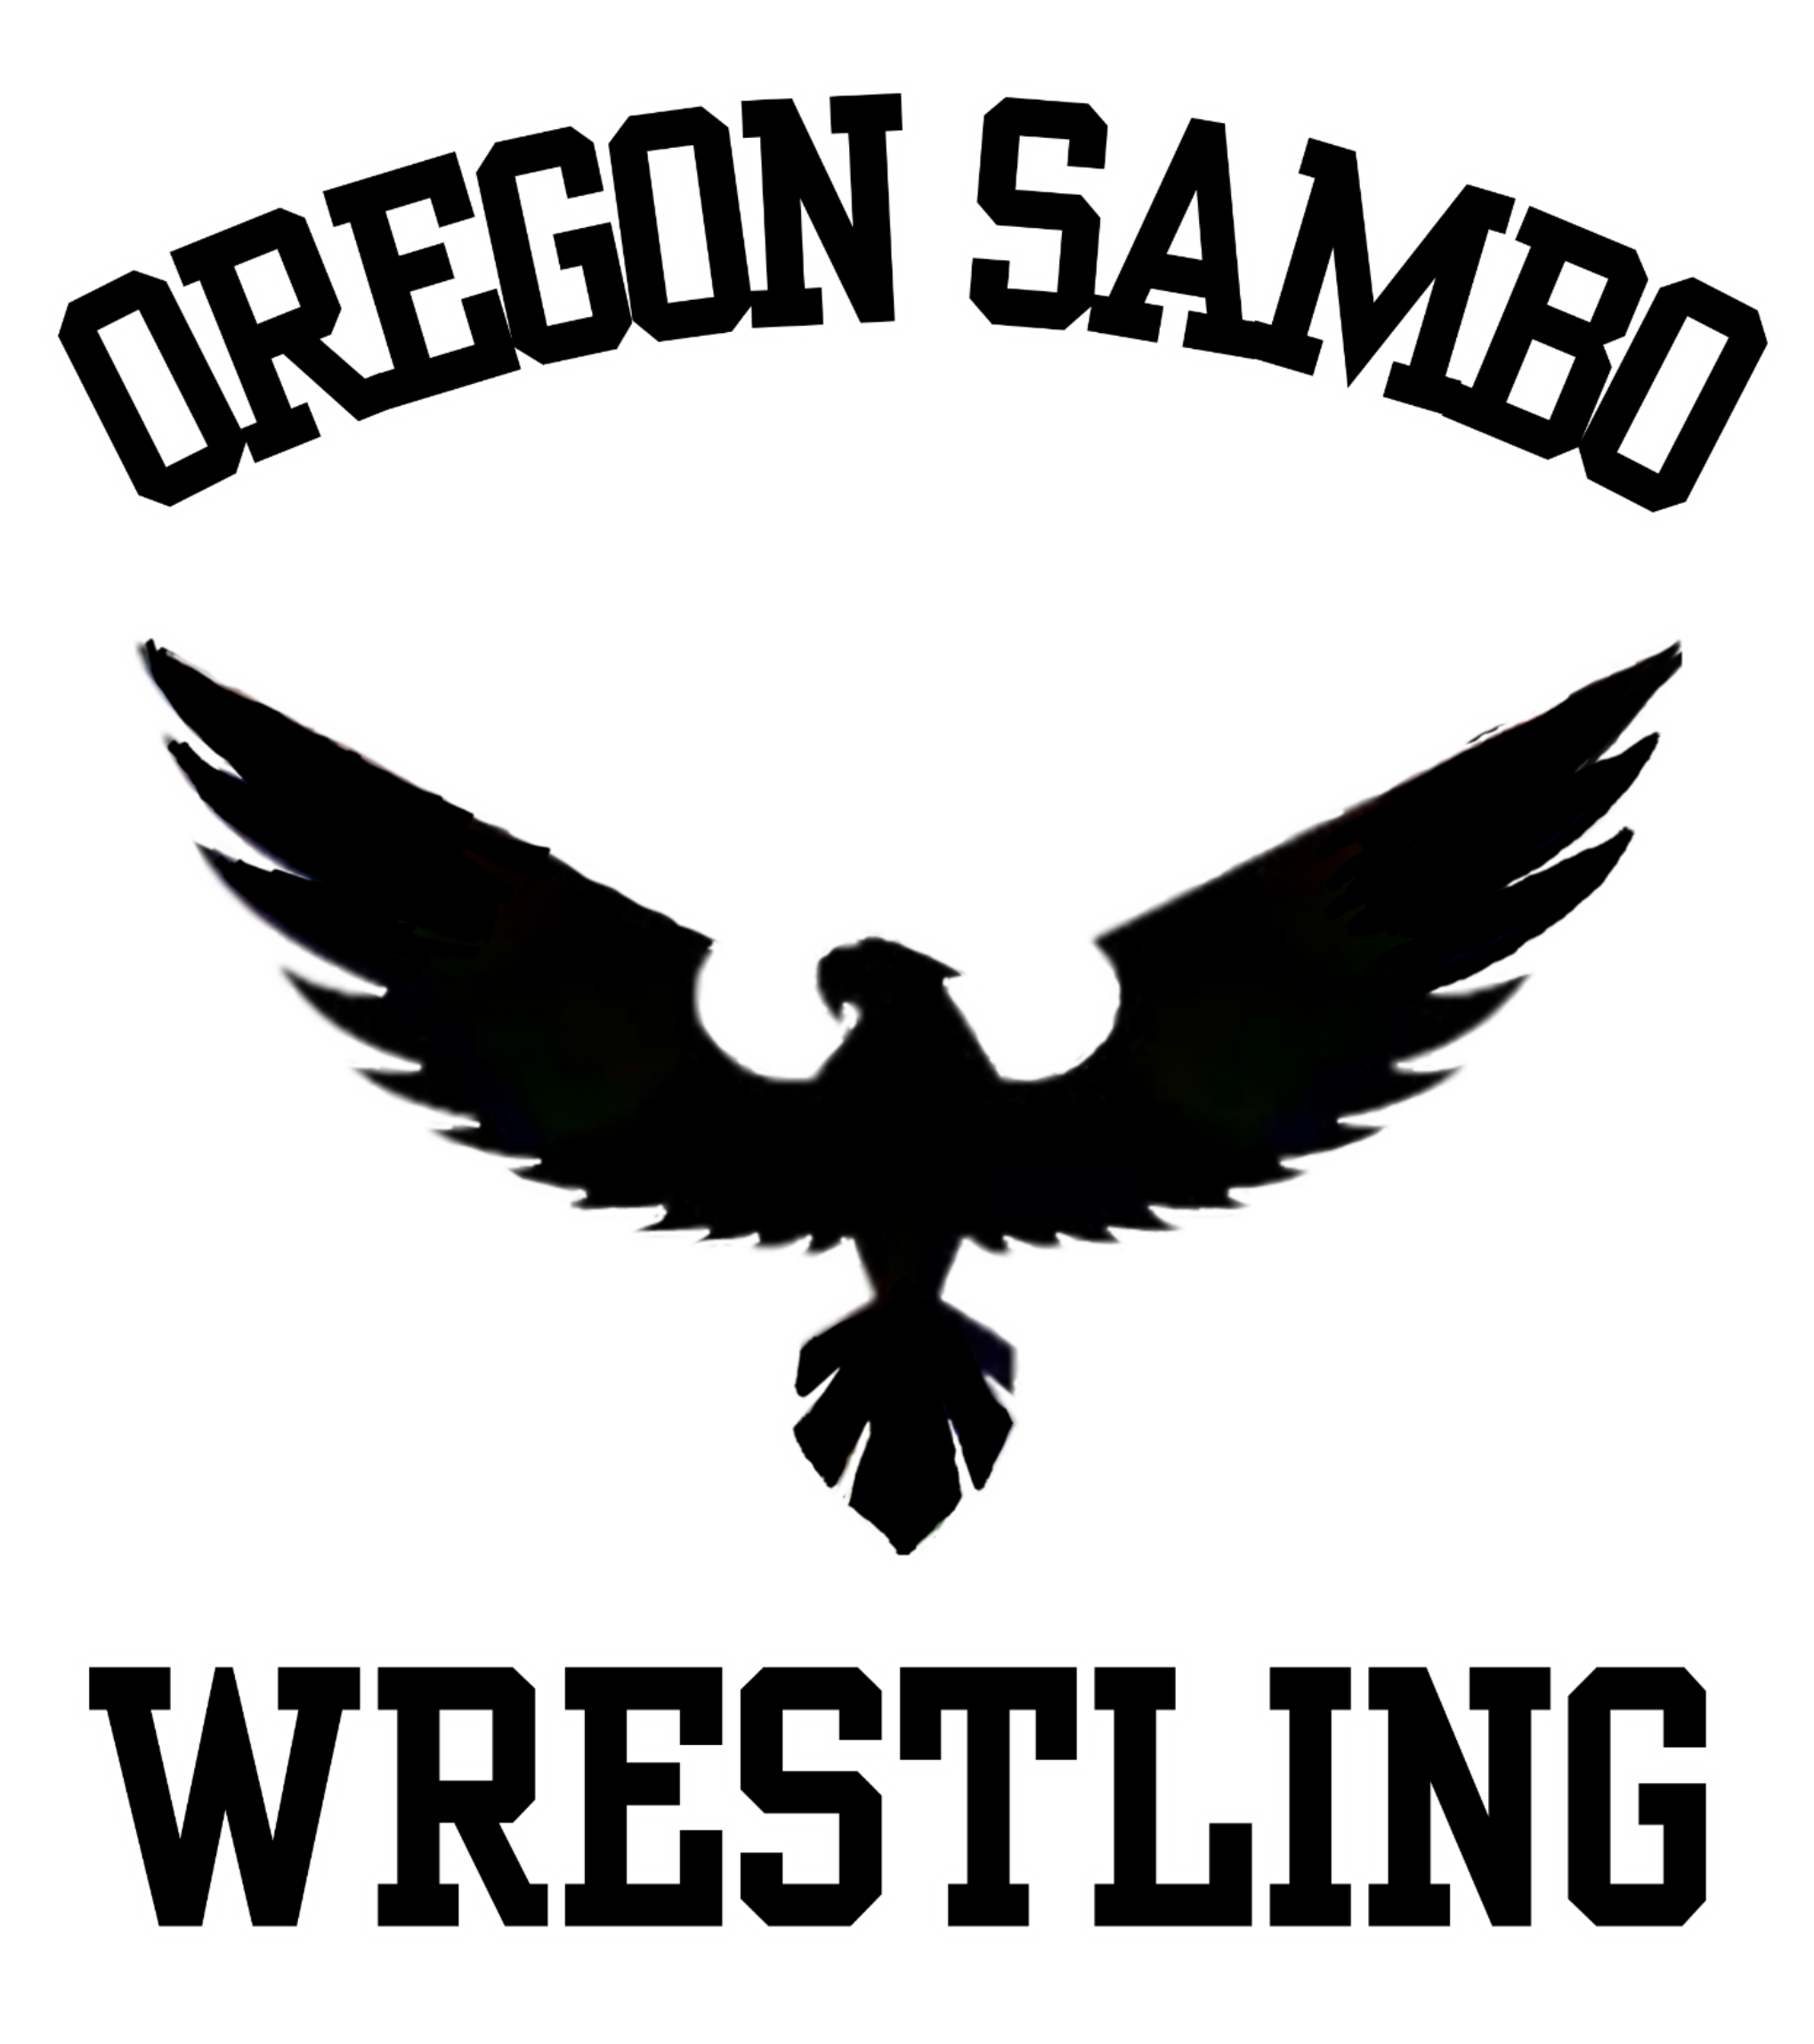 Oregon Sambo and Jujitsu